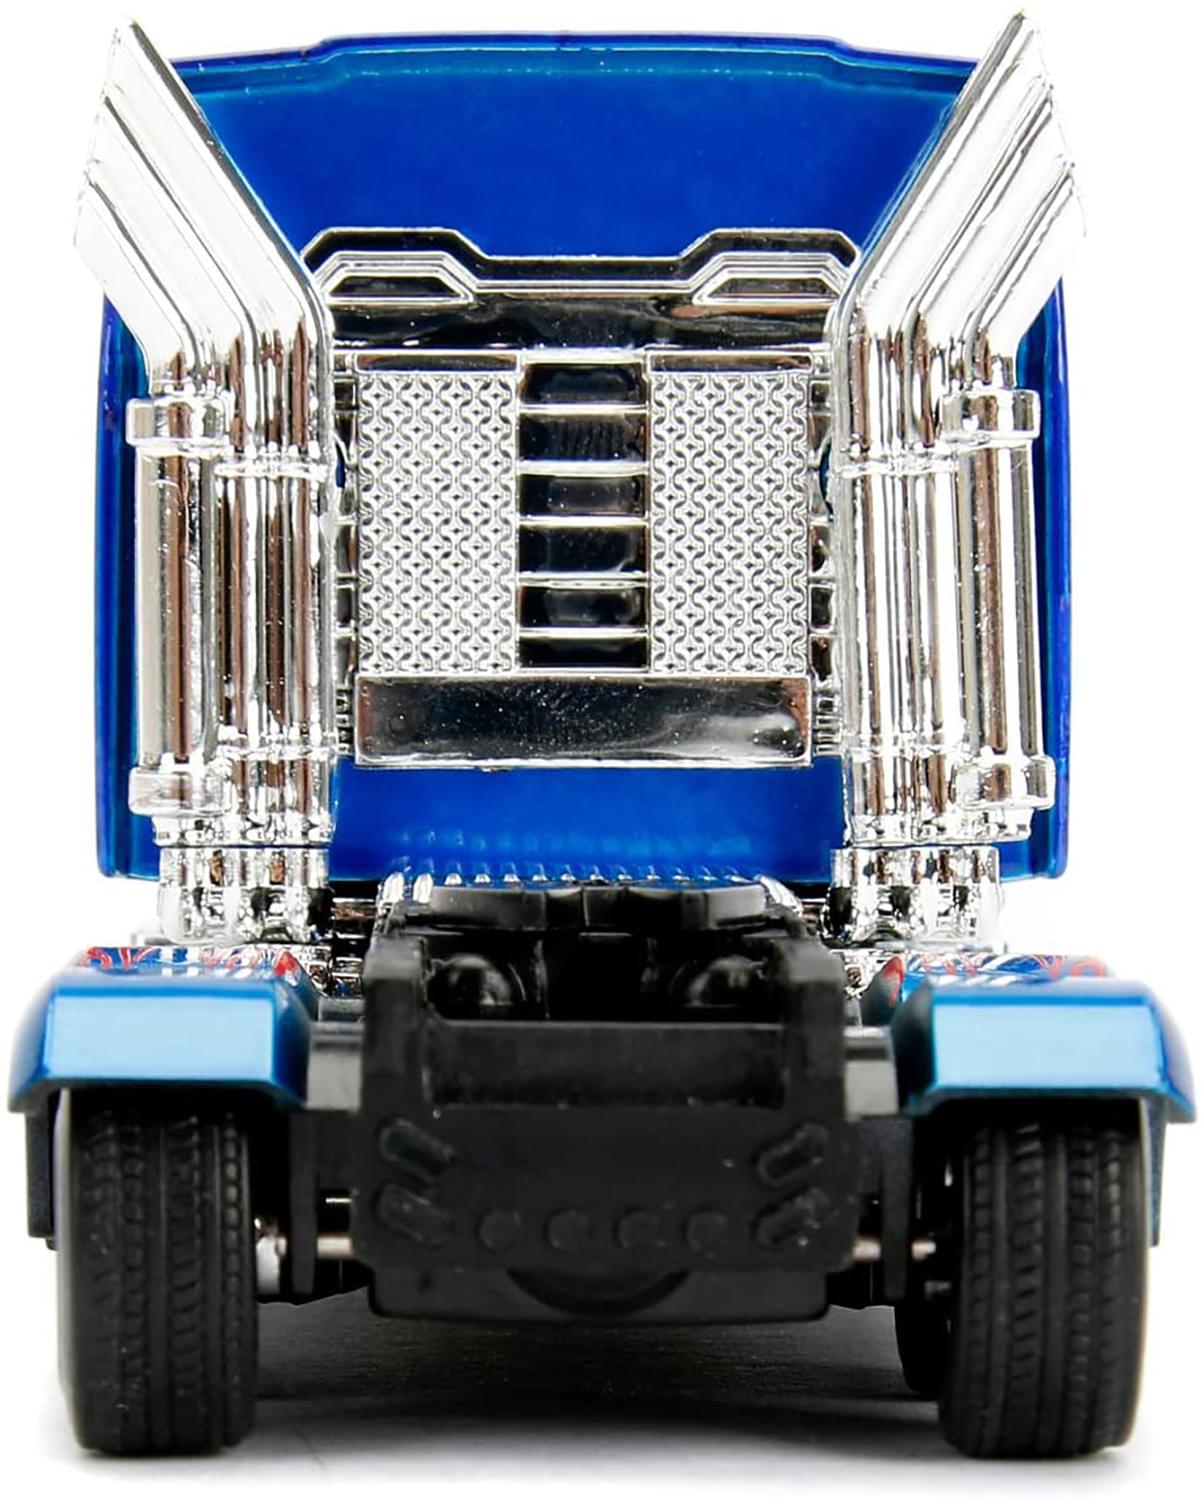 Transformers Western Star Optimus Prime 1:32 Die Cast Vehicle